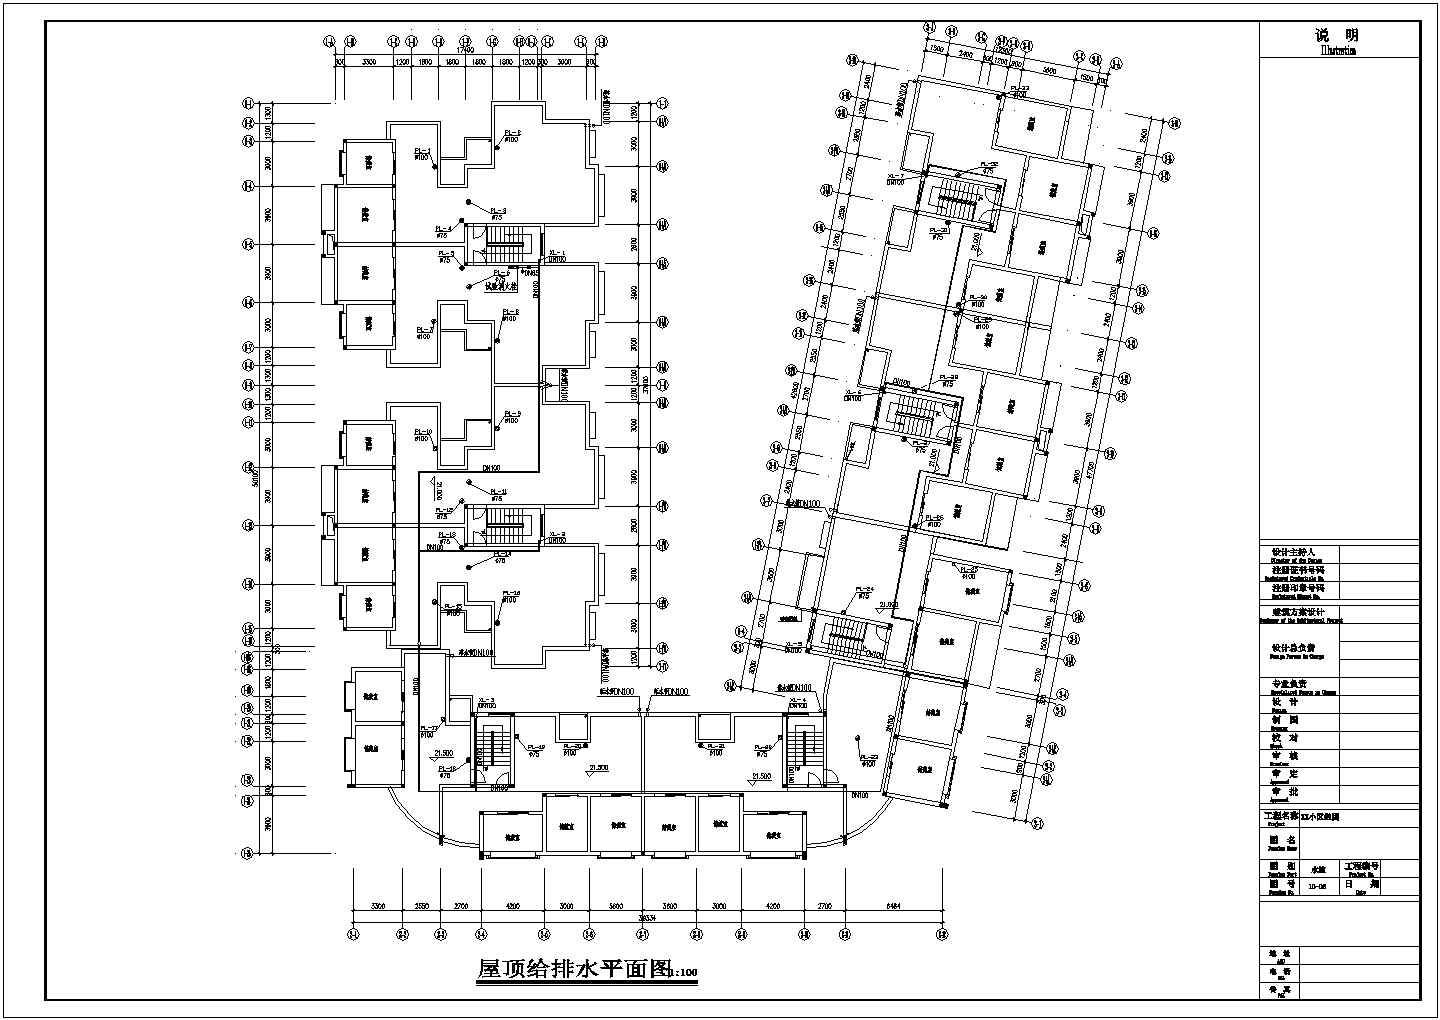 7层U型小区组团住宅给排水施工图（长50.1米 宽48米）